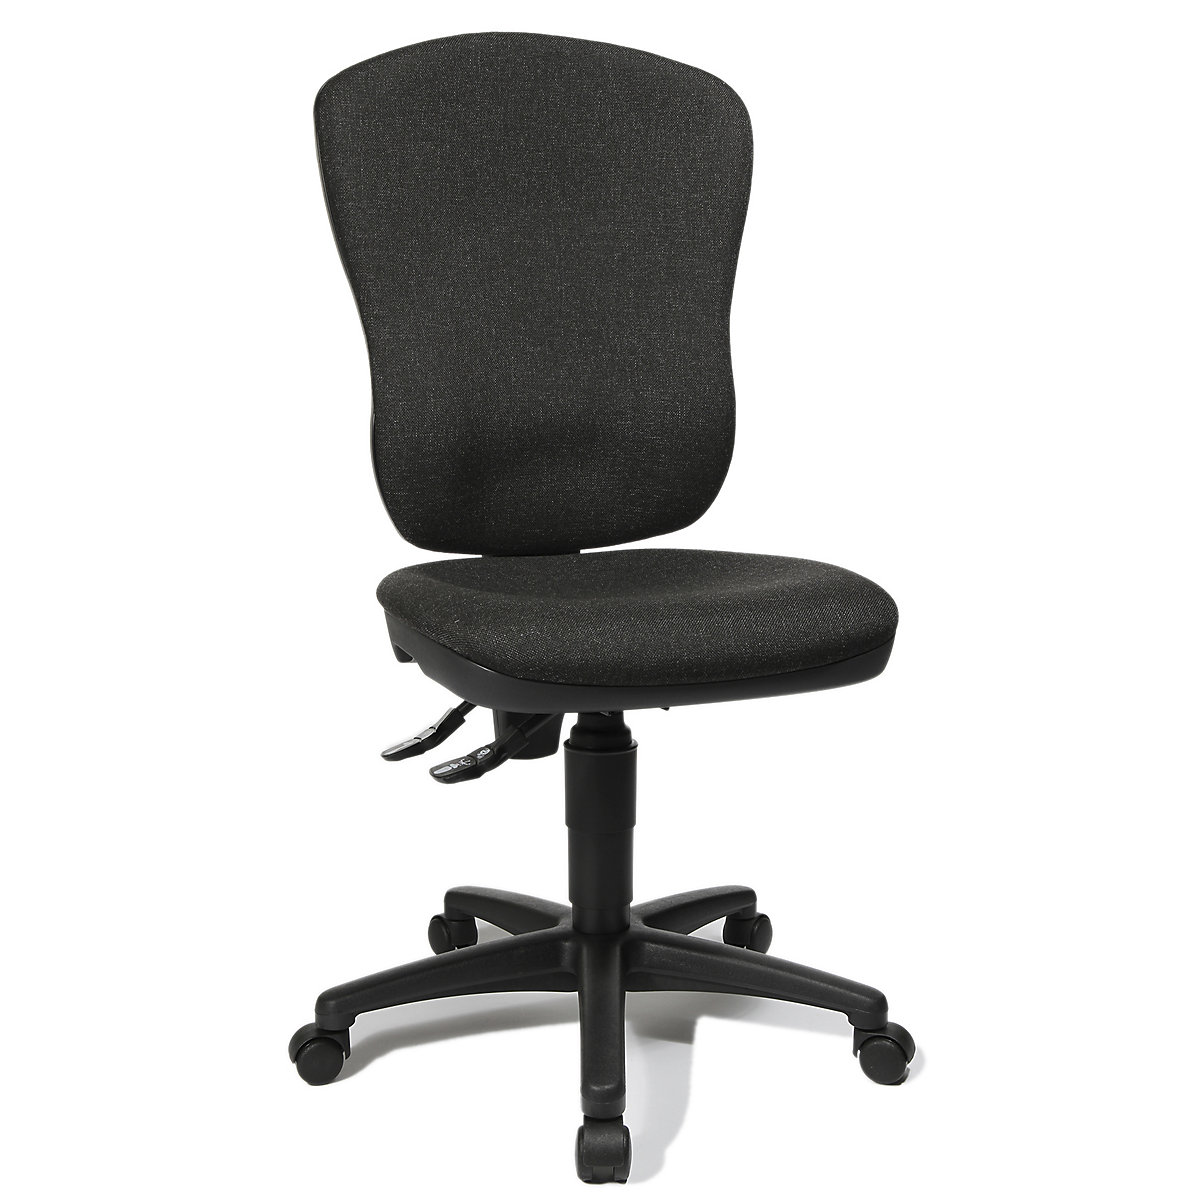 Cadeira giratória standard – Topstar, sem apoios para braços, com apoio para a região lombar, altura do encosto 570 mm, forro antracite-5